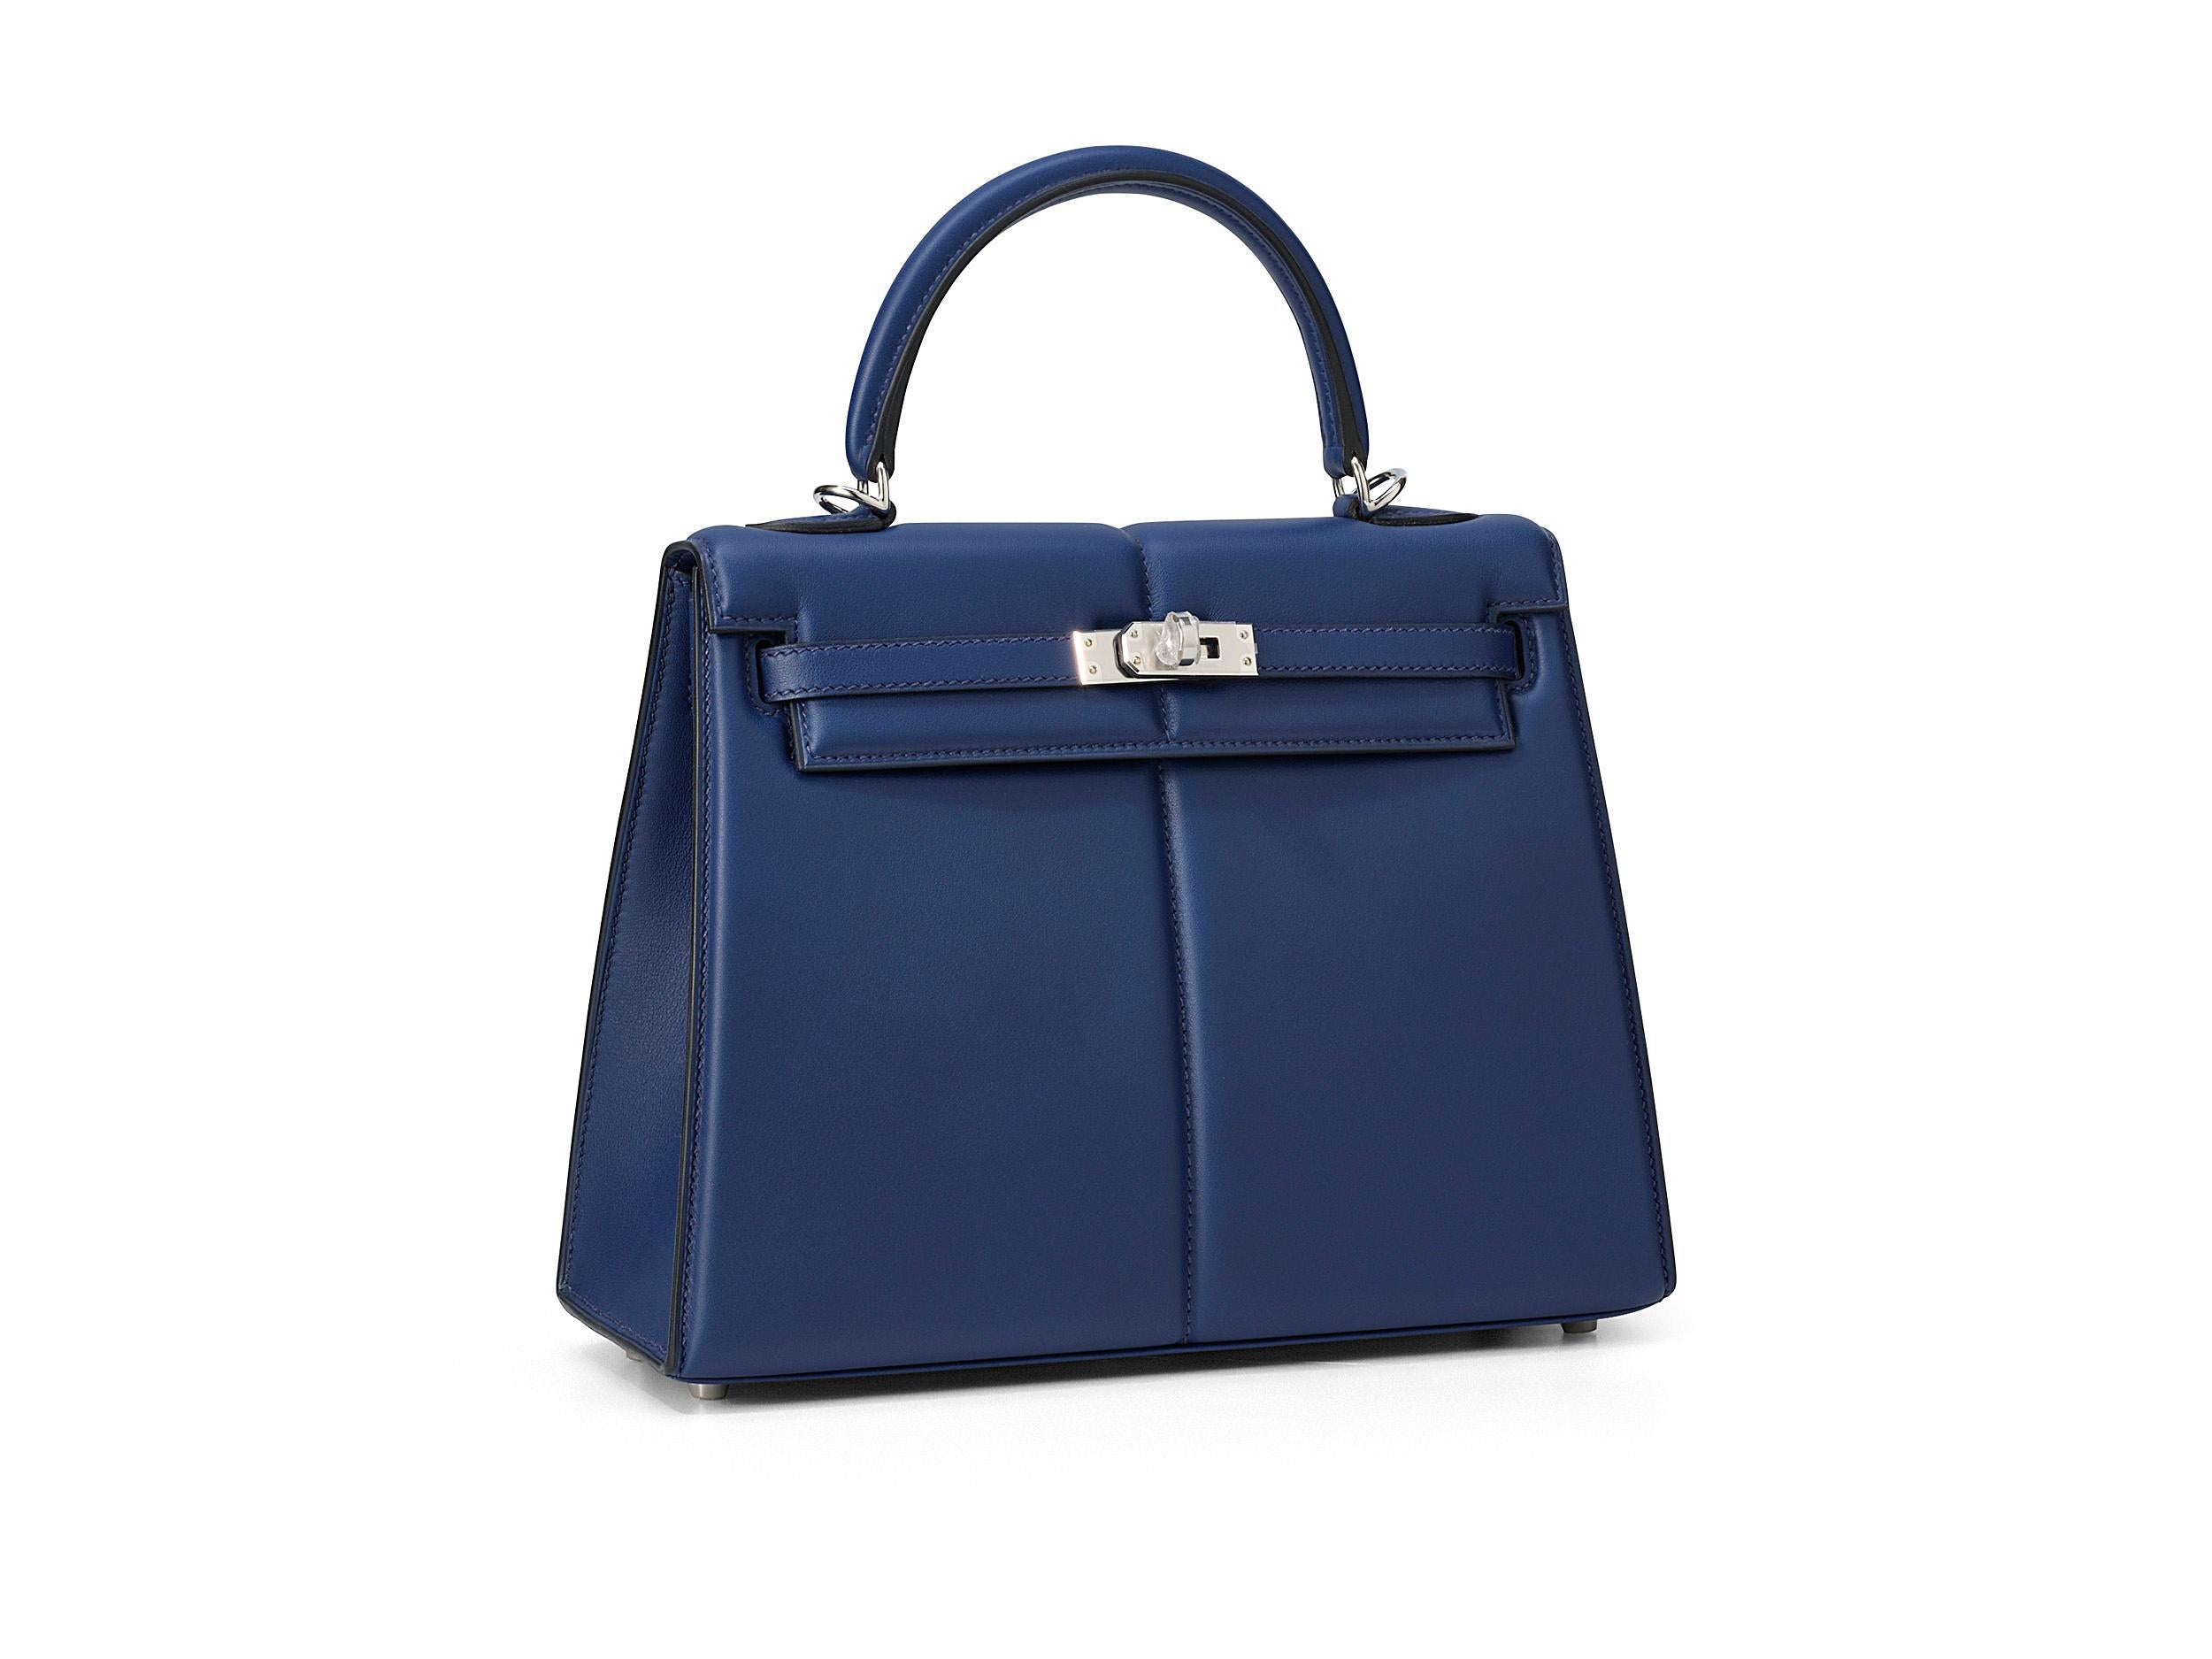 Hermès Kelly Padded 25 en cuir bleu saphire et martinet, avec accessoires en palladium. Le sac n'a pas été porté et est livré dans son intégralité, avec le reçu original.

Timbre Z (2021) 

